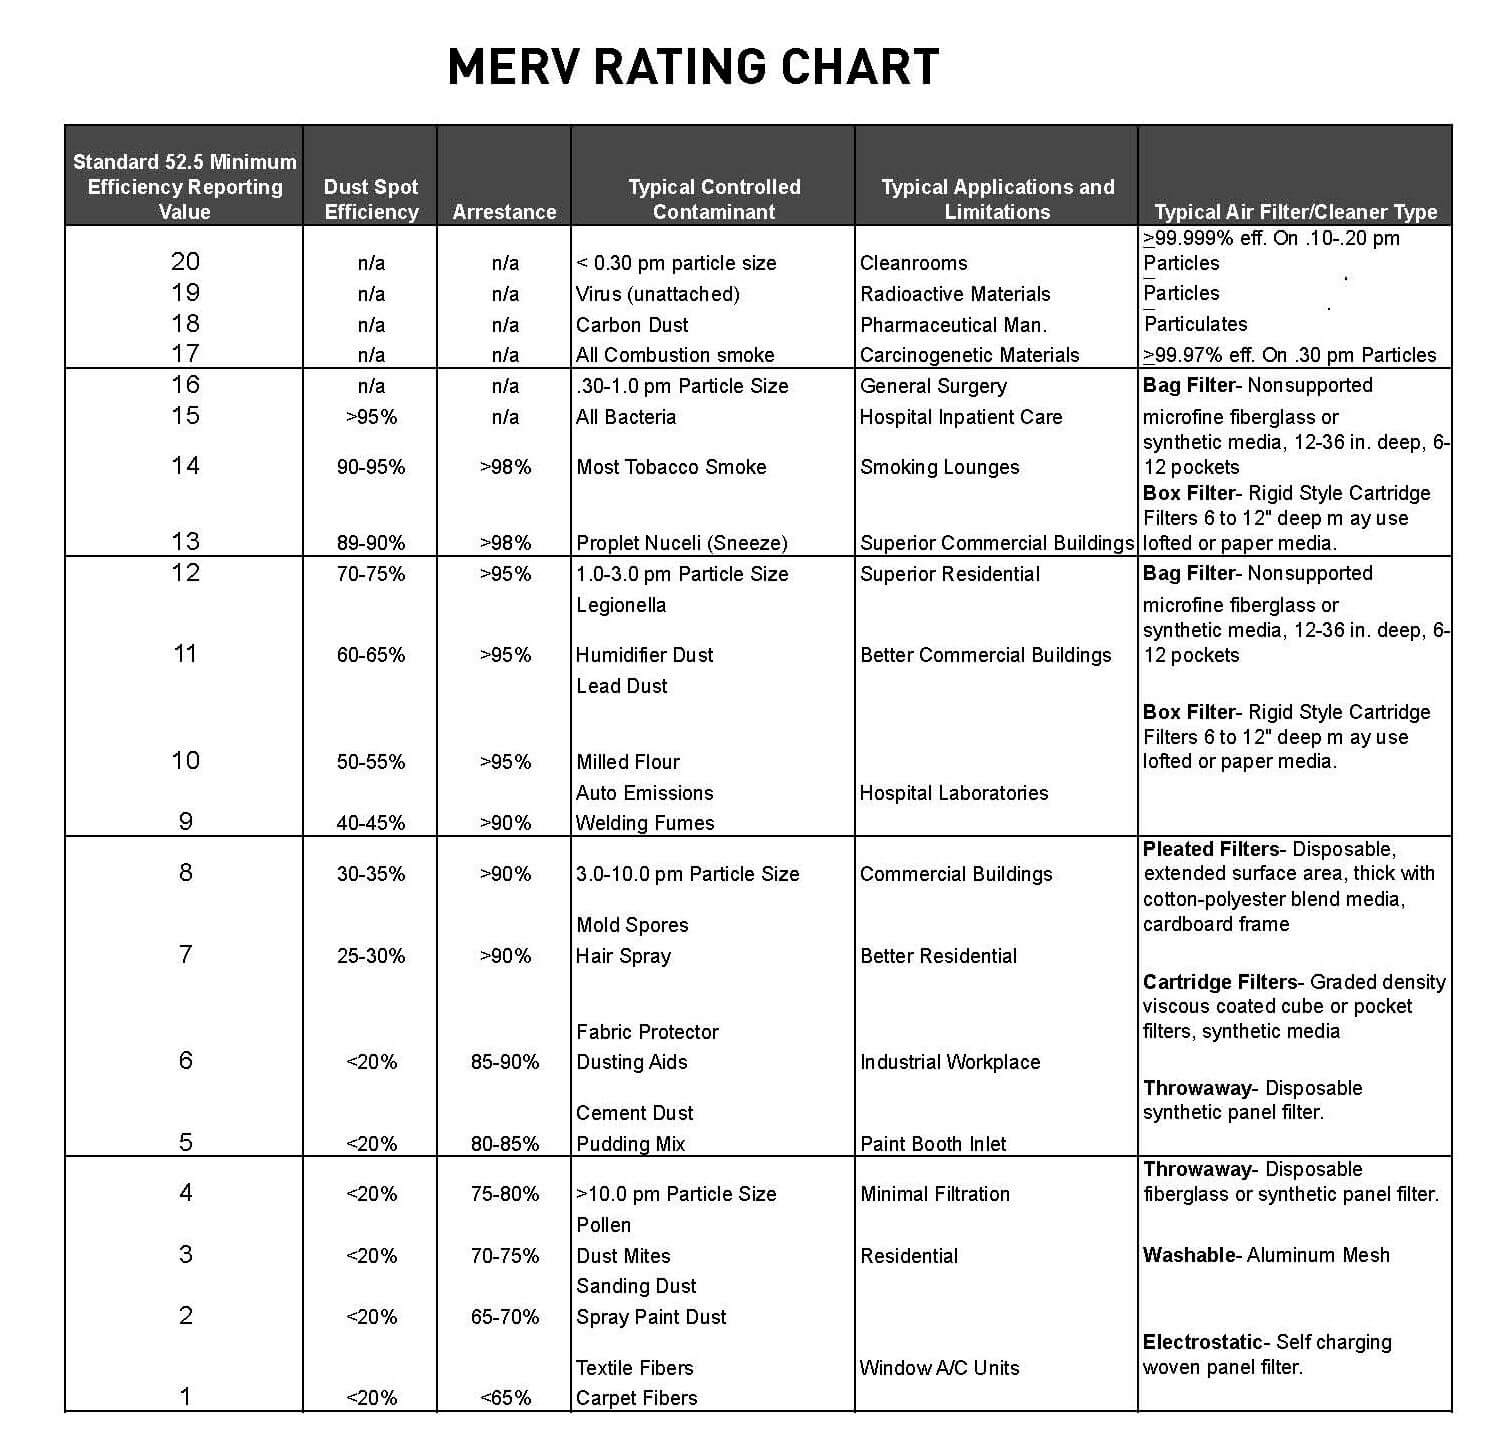 MERV rating chart